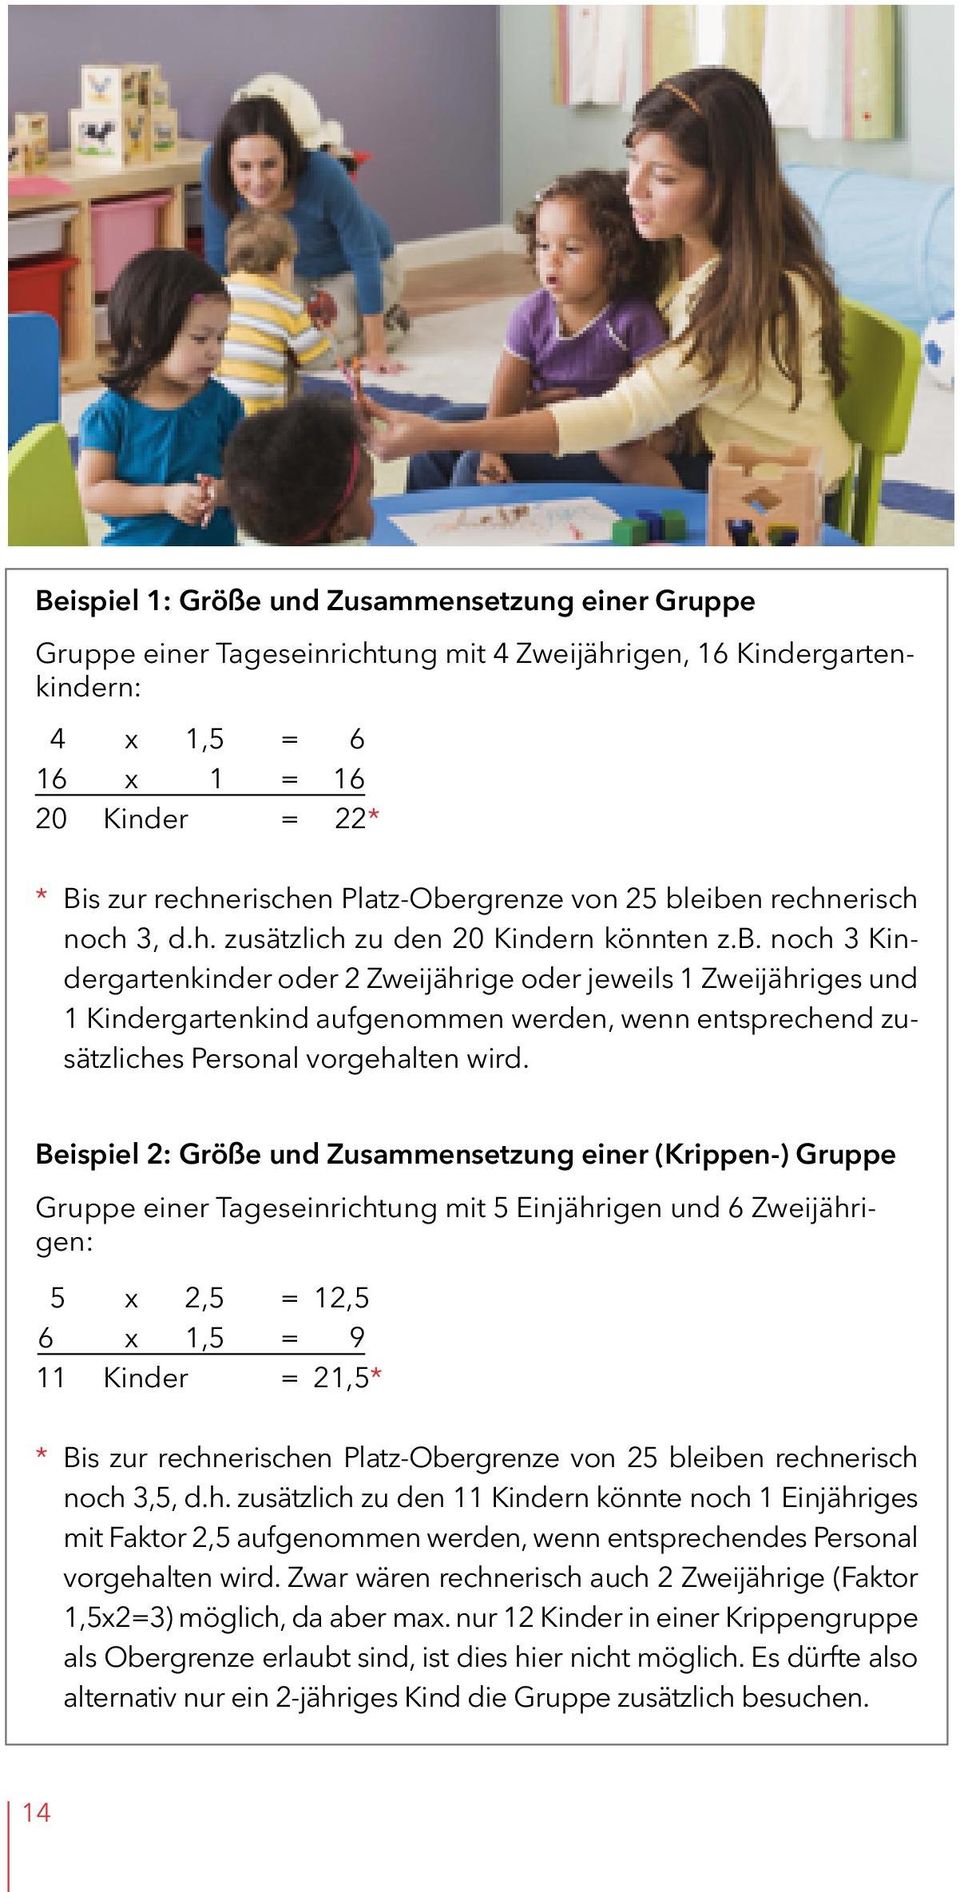 Beispiel 2: Größe und Zusammensetzung einer (Krippen-) Gruppe Gruppe einer Tageseinrichtung mit 5 Einjährigen und 6 Zweijährigen: 5 x 2,5 = 12,5 6 x 1,5 = 9 11 Kinder = 21,5* * Bis zur rechnerischen